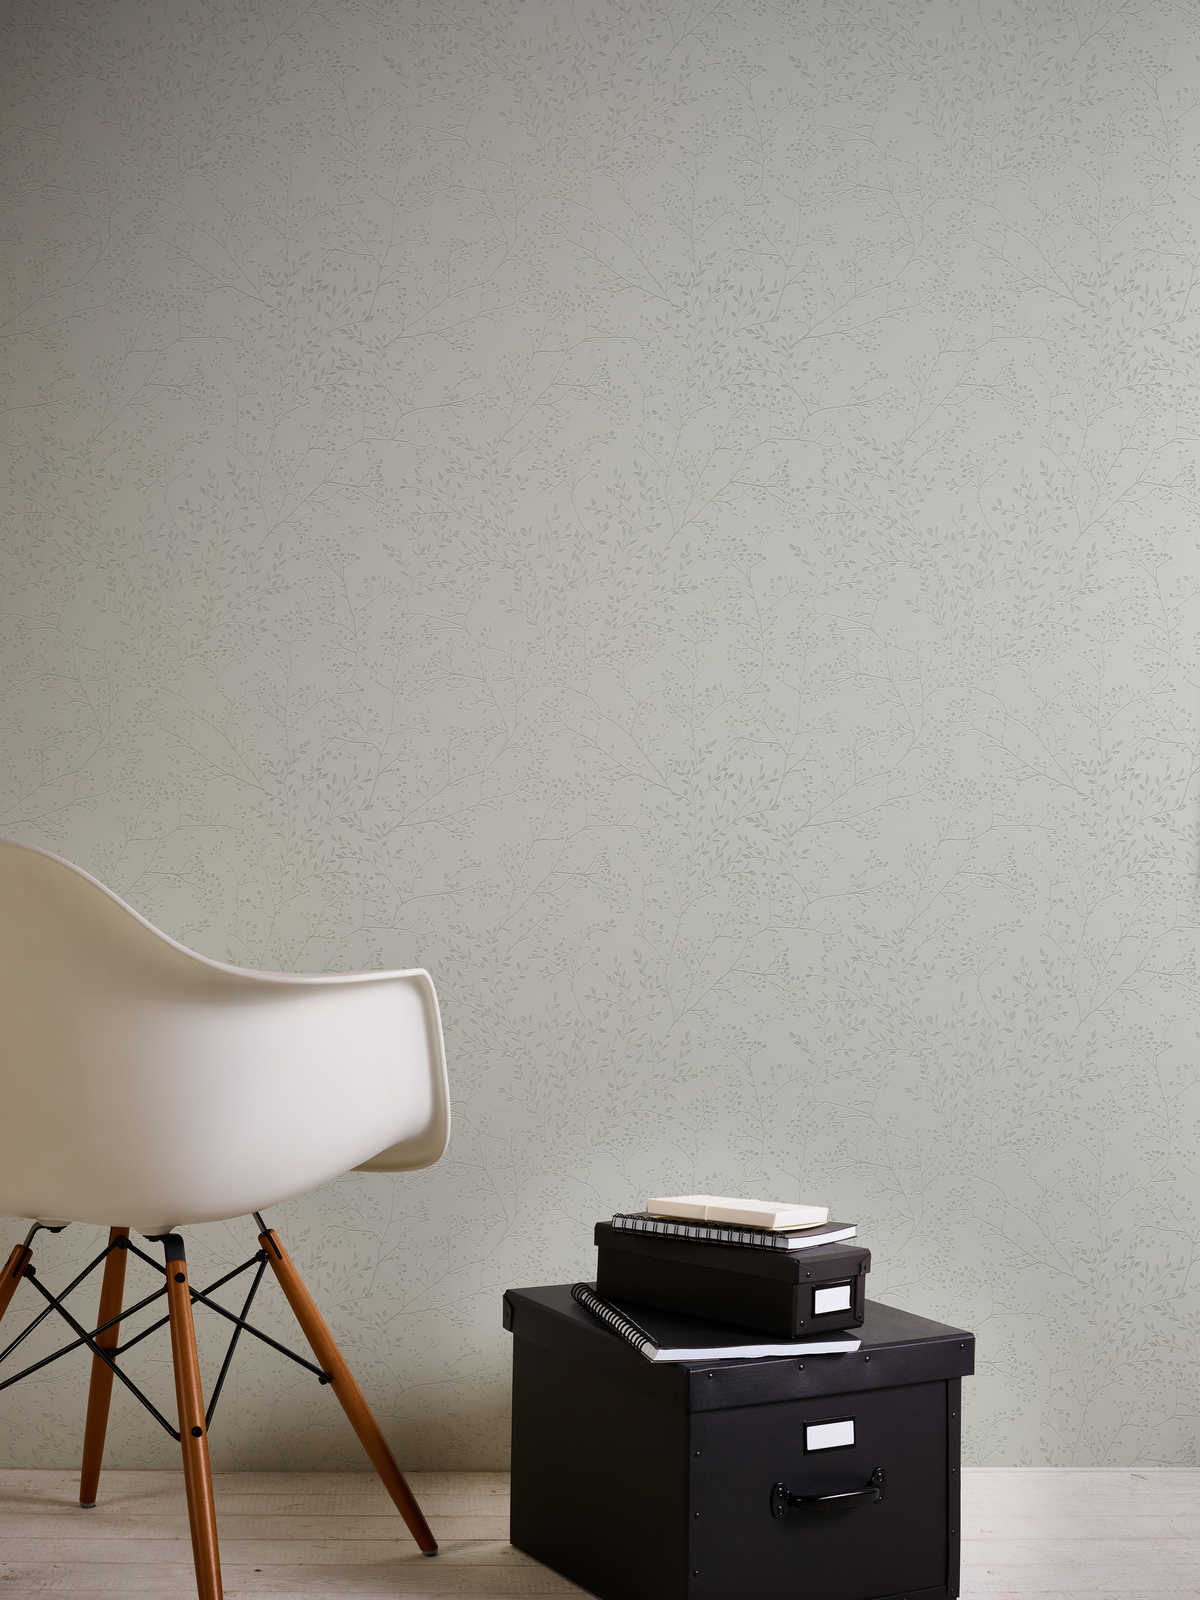             Effen grijs behang met bladmotief, glans & textuureffect
        